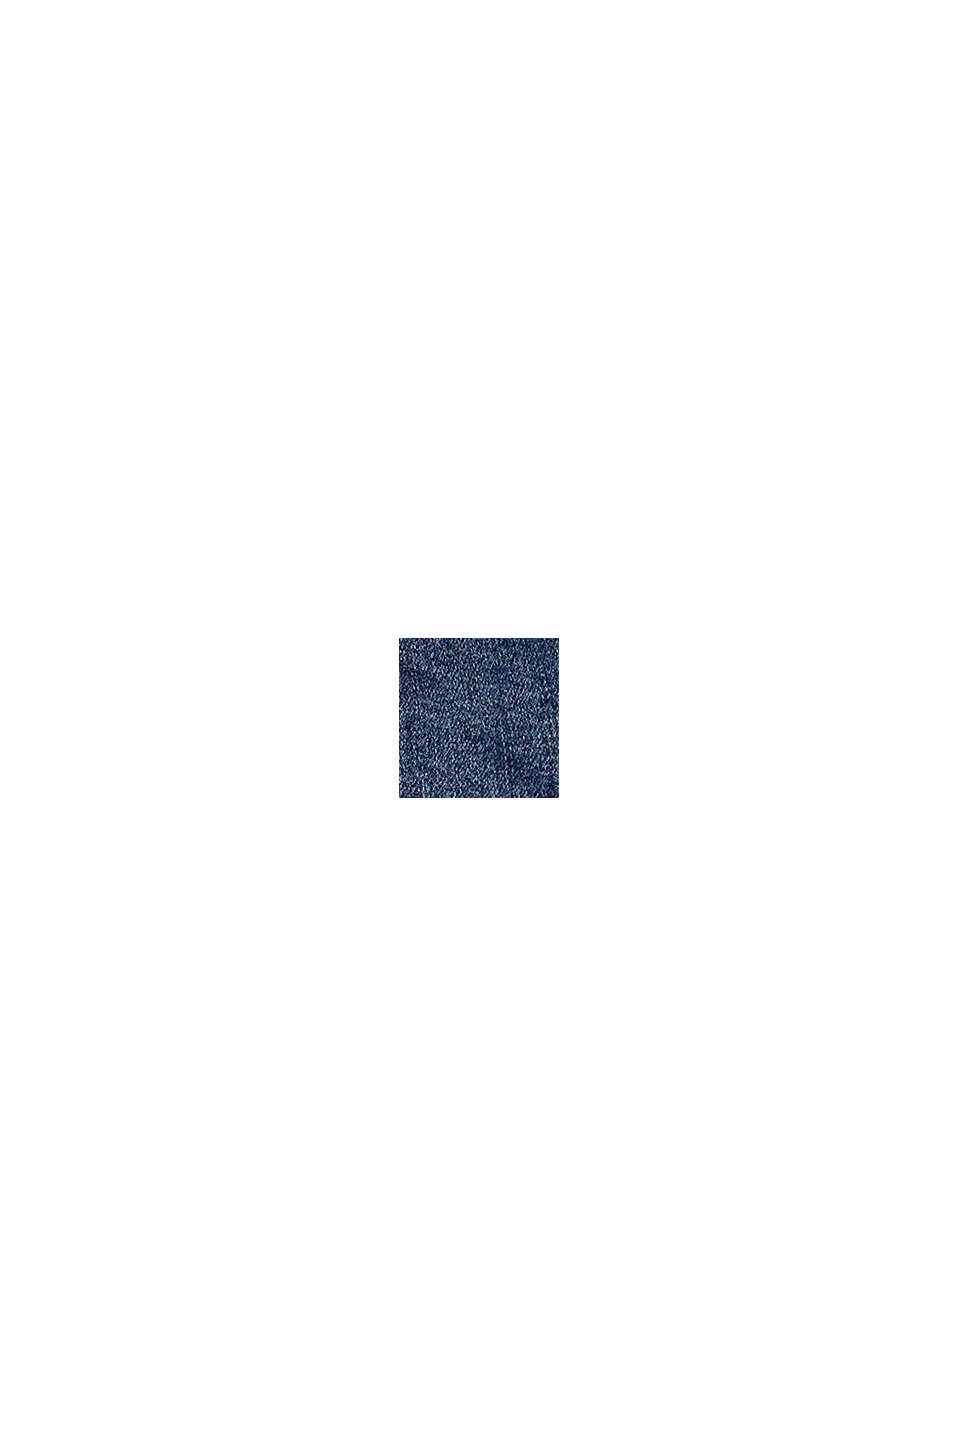 Vaqueros cortos de algodón con cintura ajustable, BLUE MEDIUM WASHED, swatch